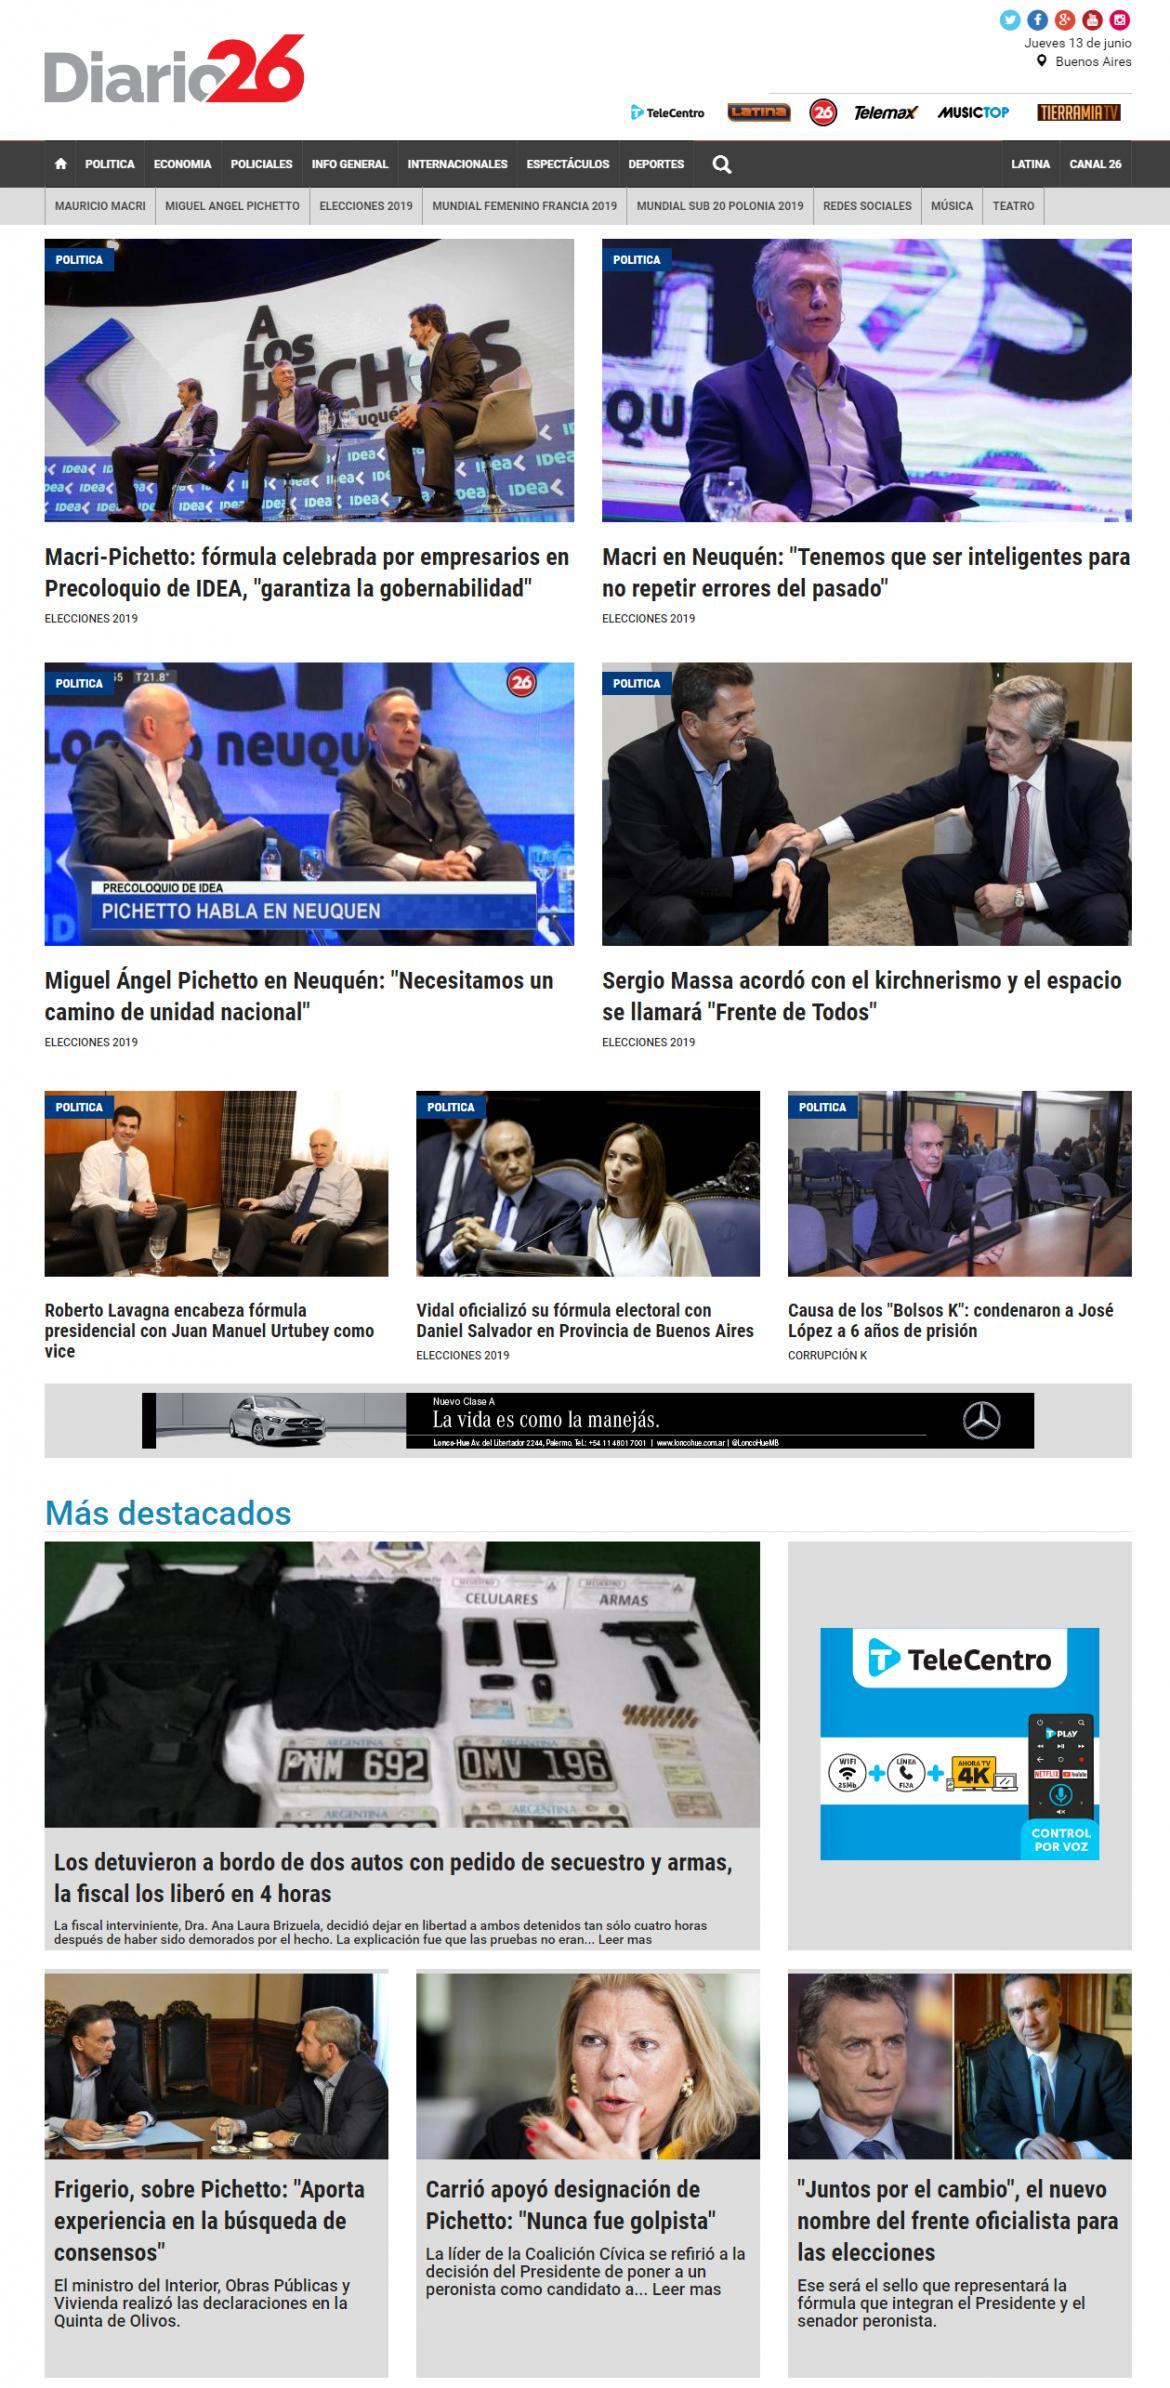 Tapas de Diarios - Diario 26 jueves 13-6-19